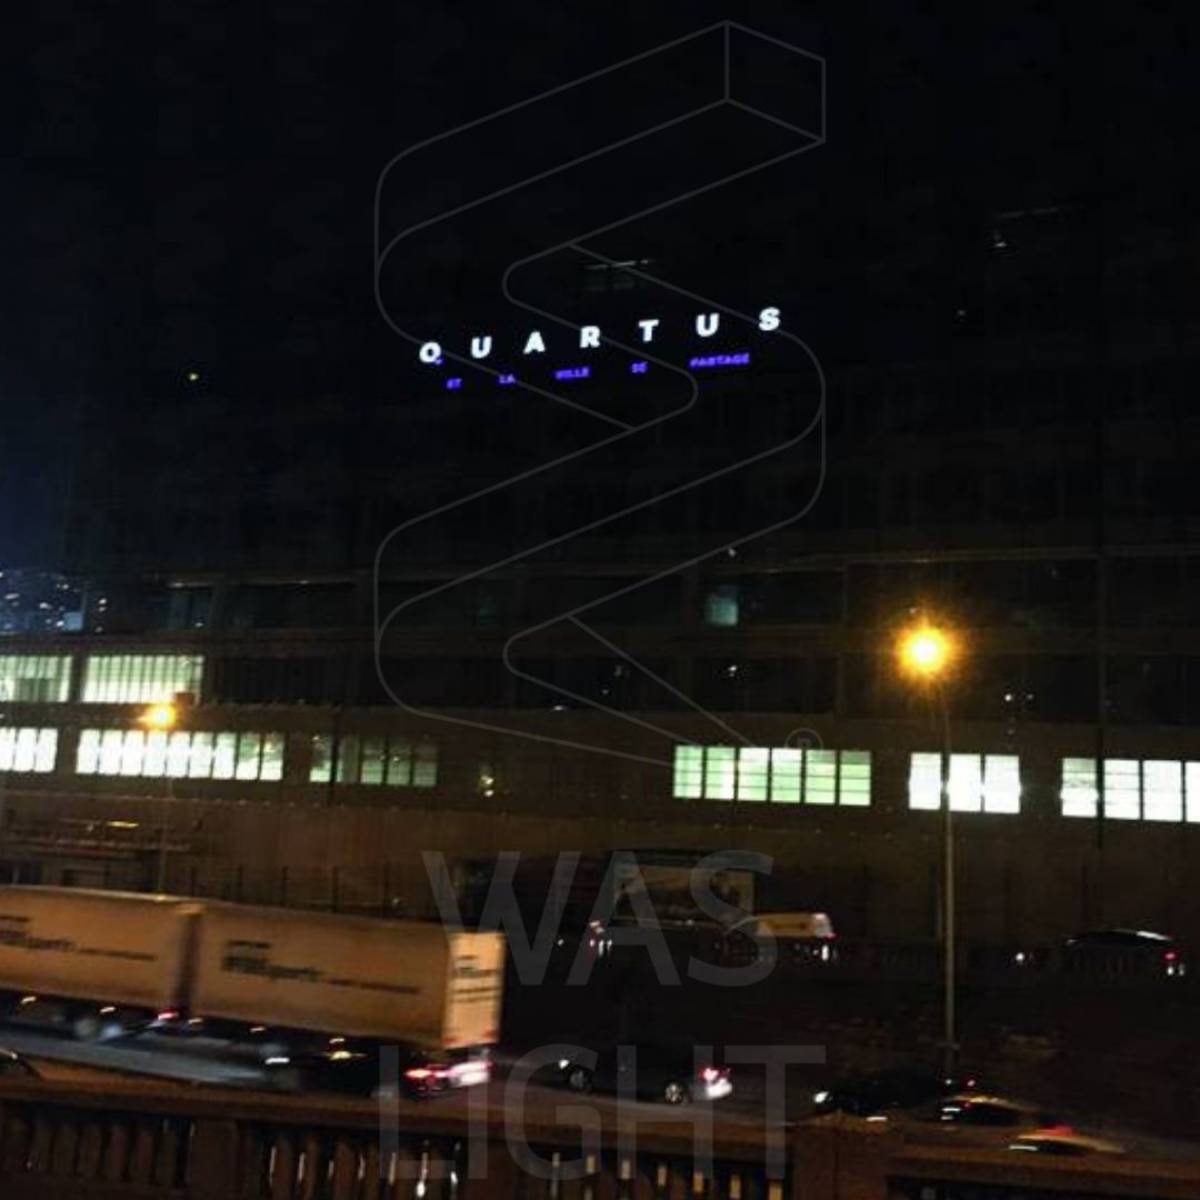 Création et innovation d'une vitrophanie lumineuse Quartus sur la façade d'un bâtiment à Paris